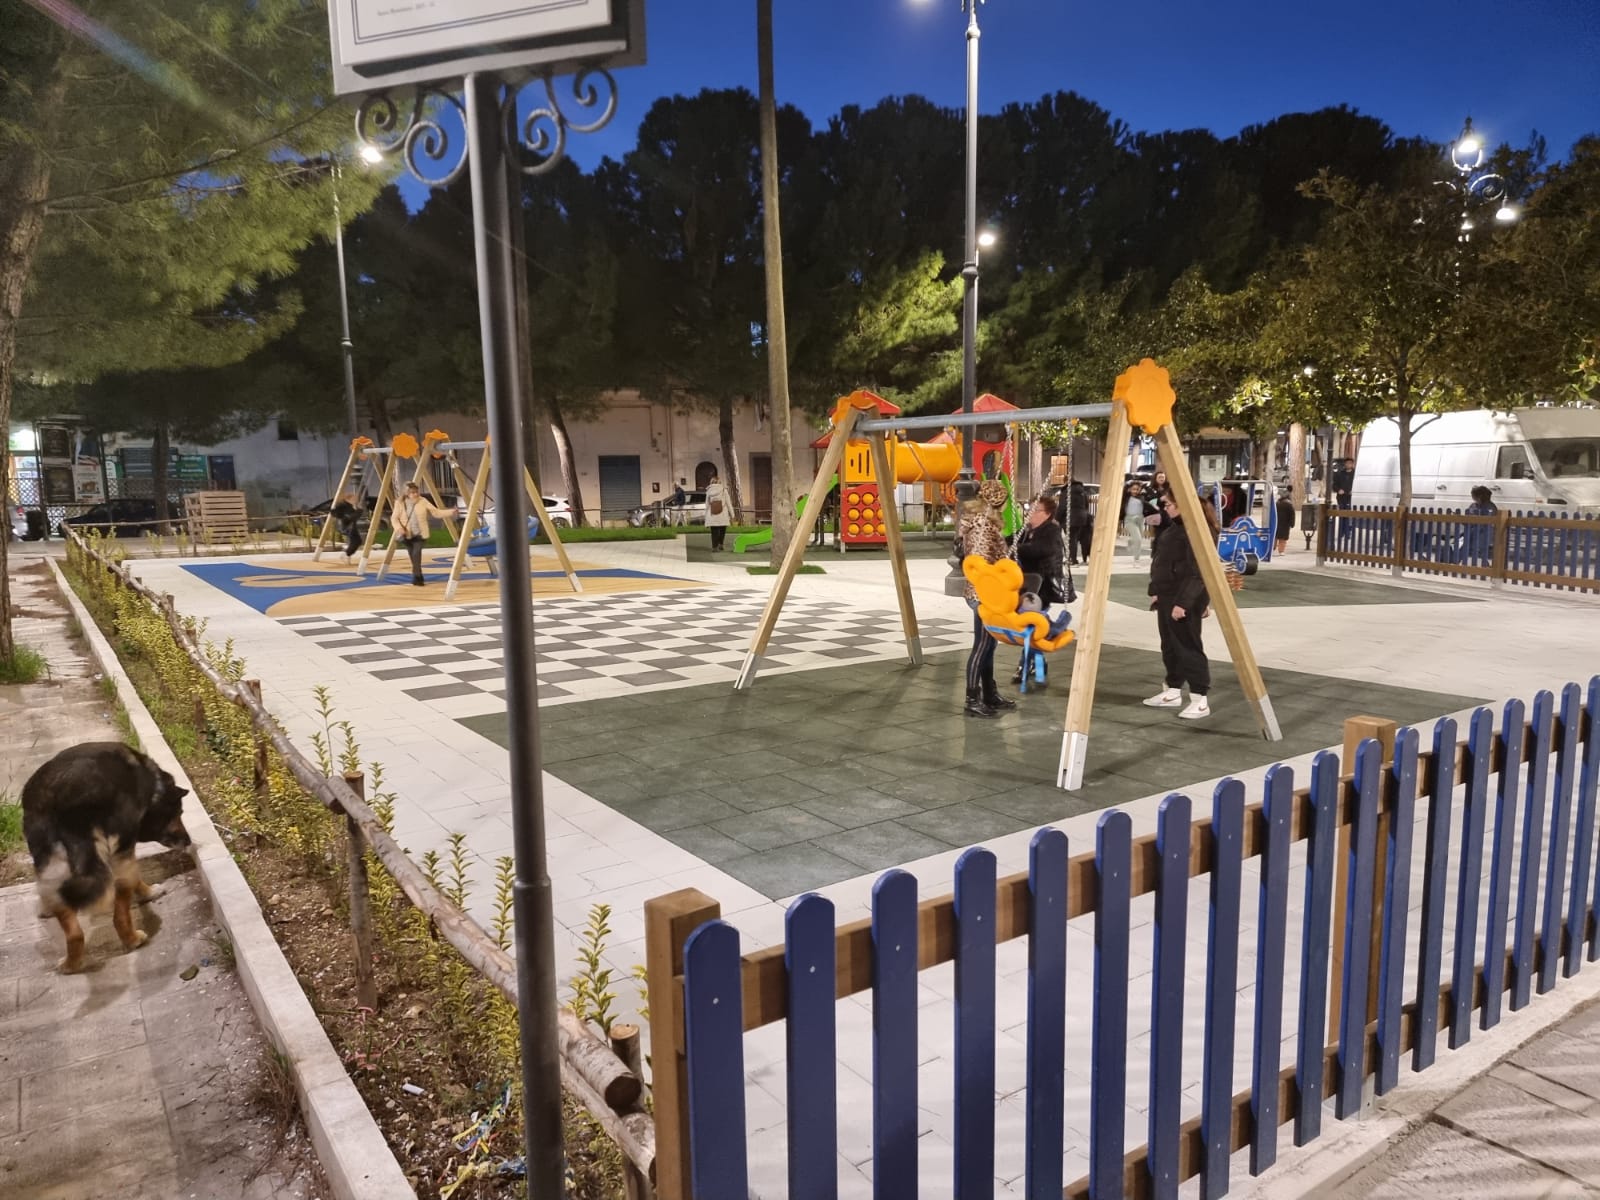 GROTTAGLIE. “In Piazza Principe di Piemonte giochi rinnovati, l’area torna ai bambini”